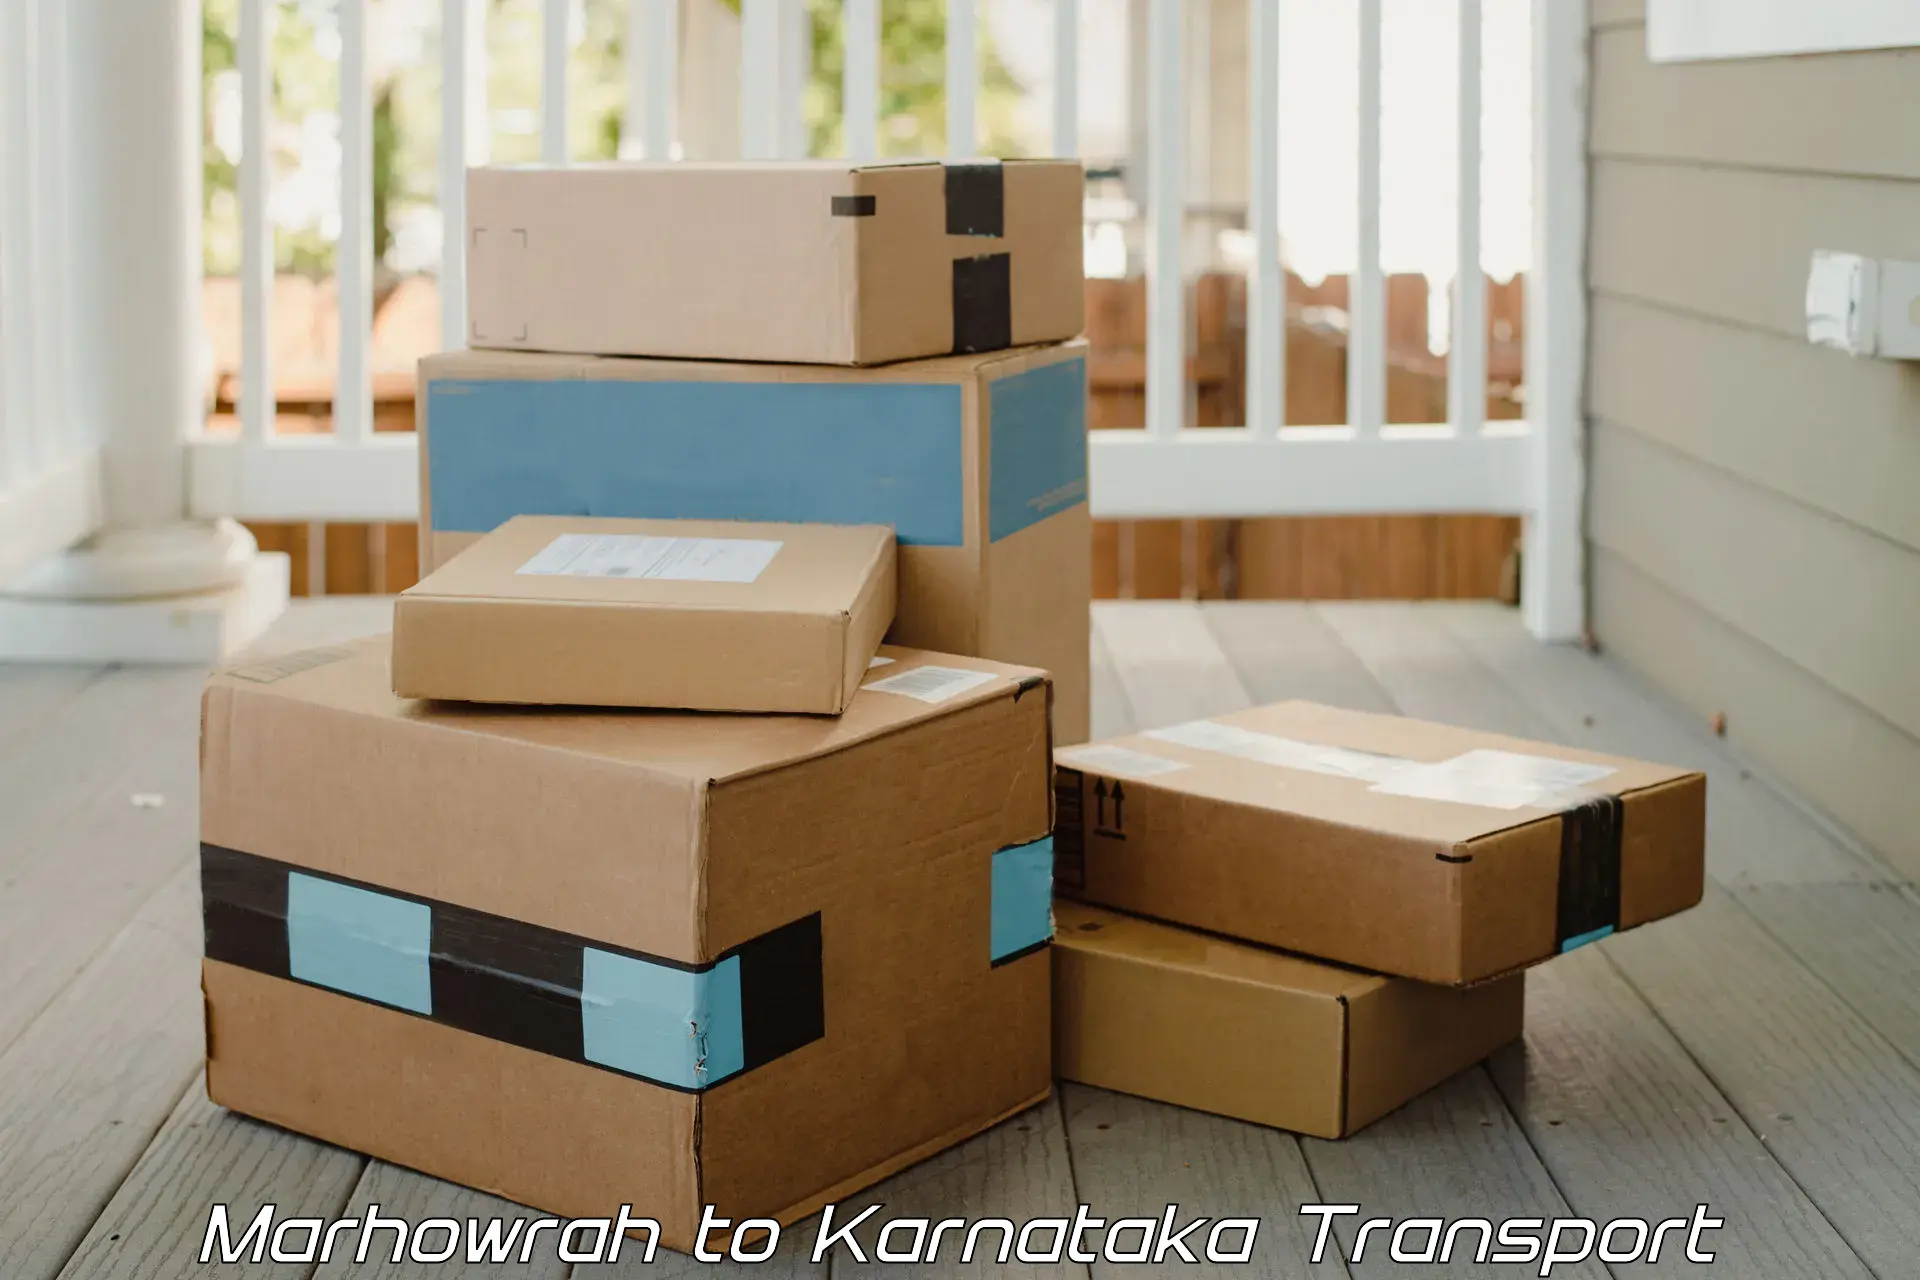 Vehicle parcel service Marhowrah to Sindhanur